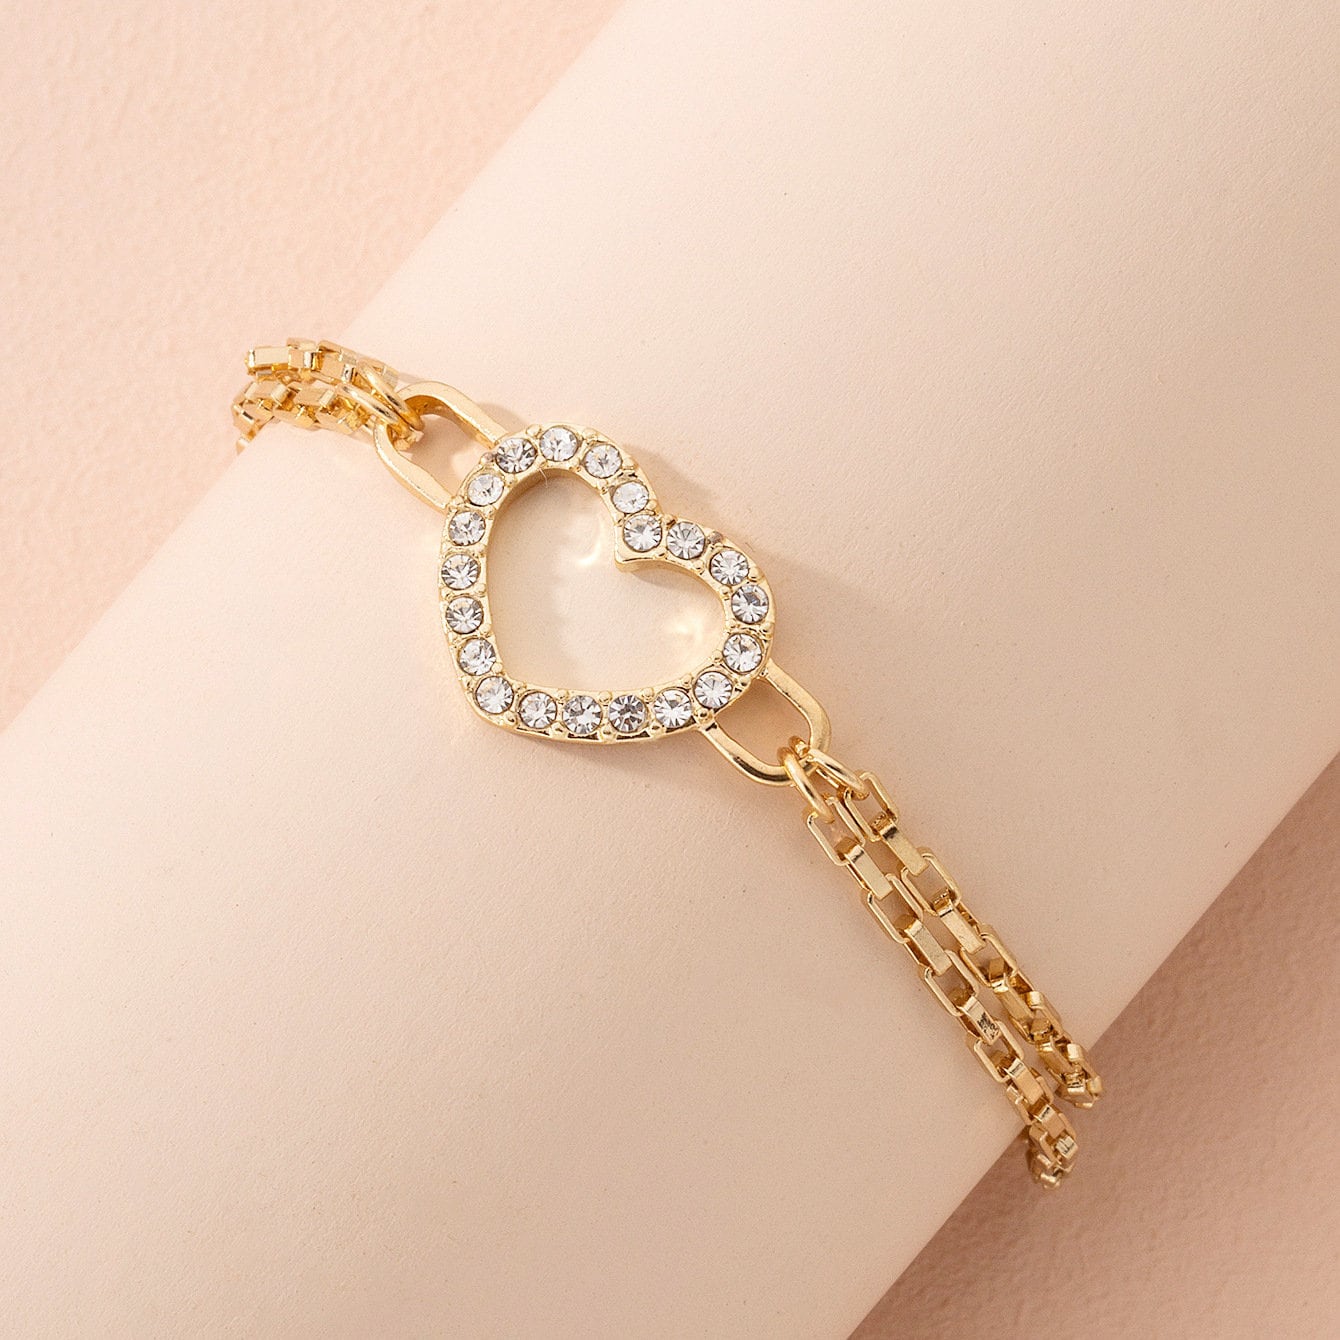 BN-00126 Fine Jewelry Women Wholesale Items For Resale In Bulk Bracelets  For Women Luxury Valentins Day Gift For Girlfriend - AliExpress